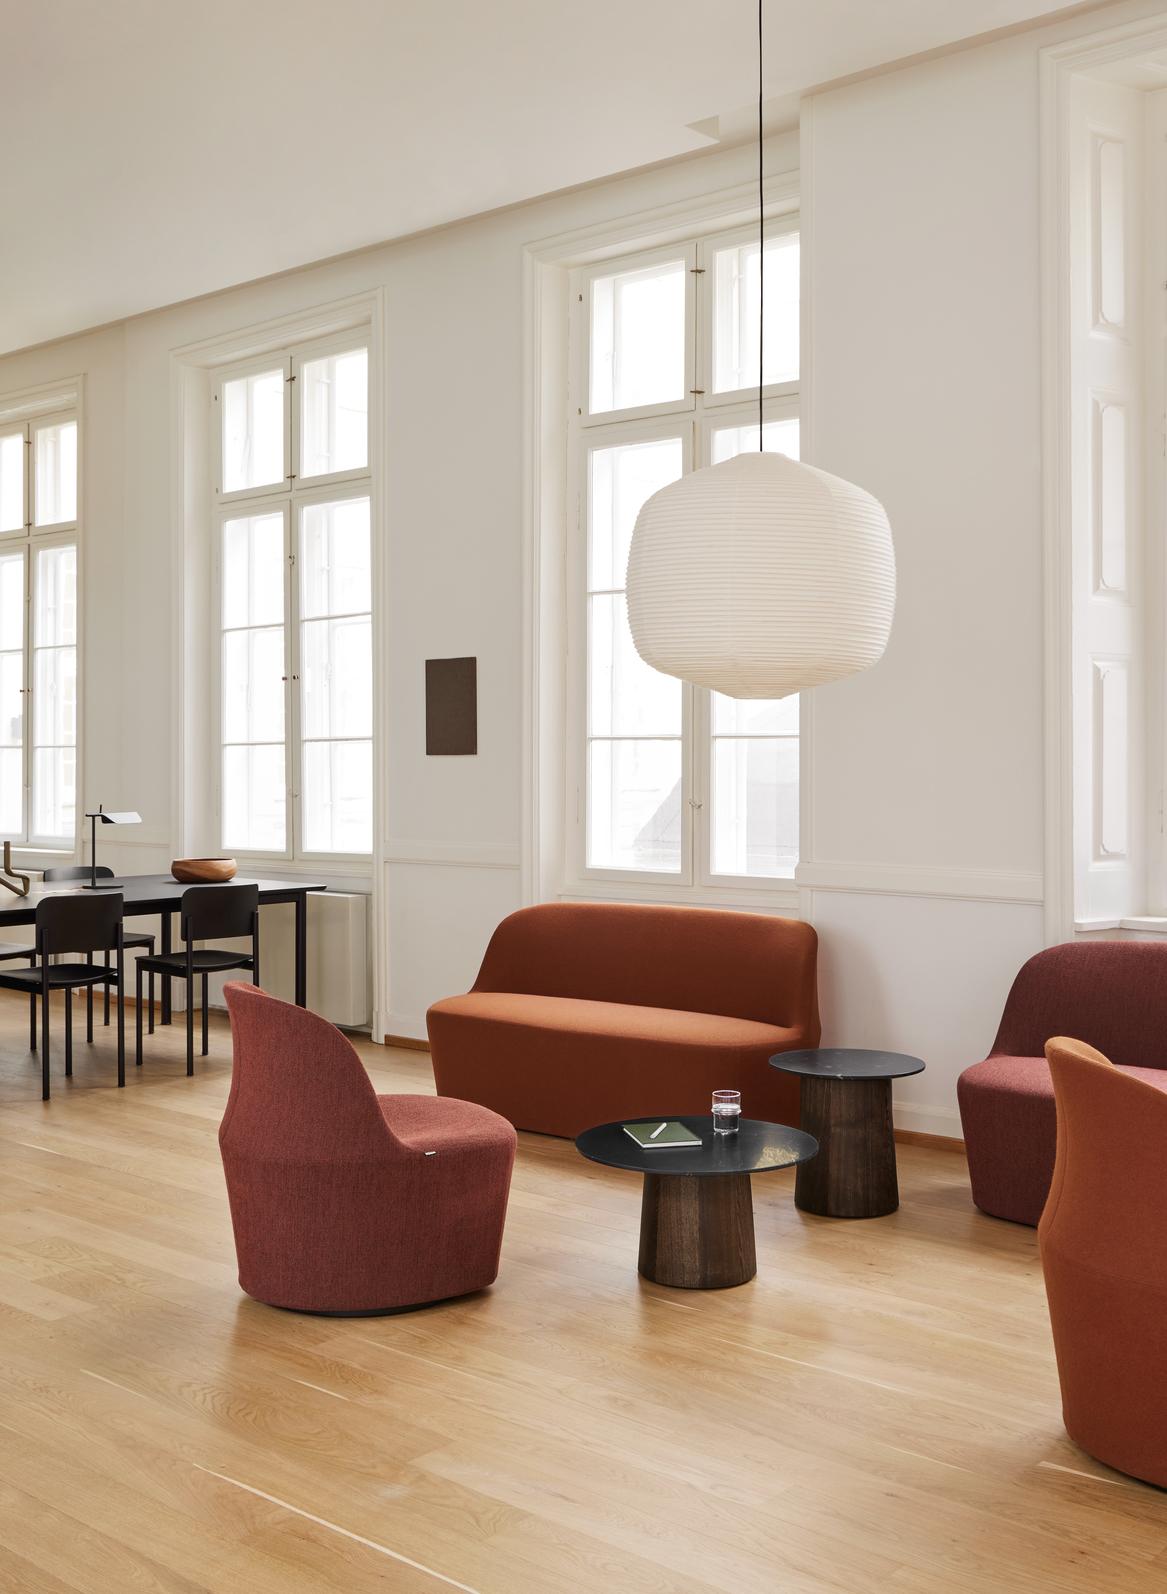 Niveau est une ligne élégante et polyvalente de tables basses en marbre sophistiqué et en bois sensuel, alliant les lignes minimalistes scandinaves à la beauté des matériaux naturels. 
Conçue par la célèbre designer danoise Cecilie Manz, la table